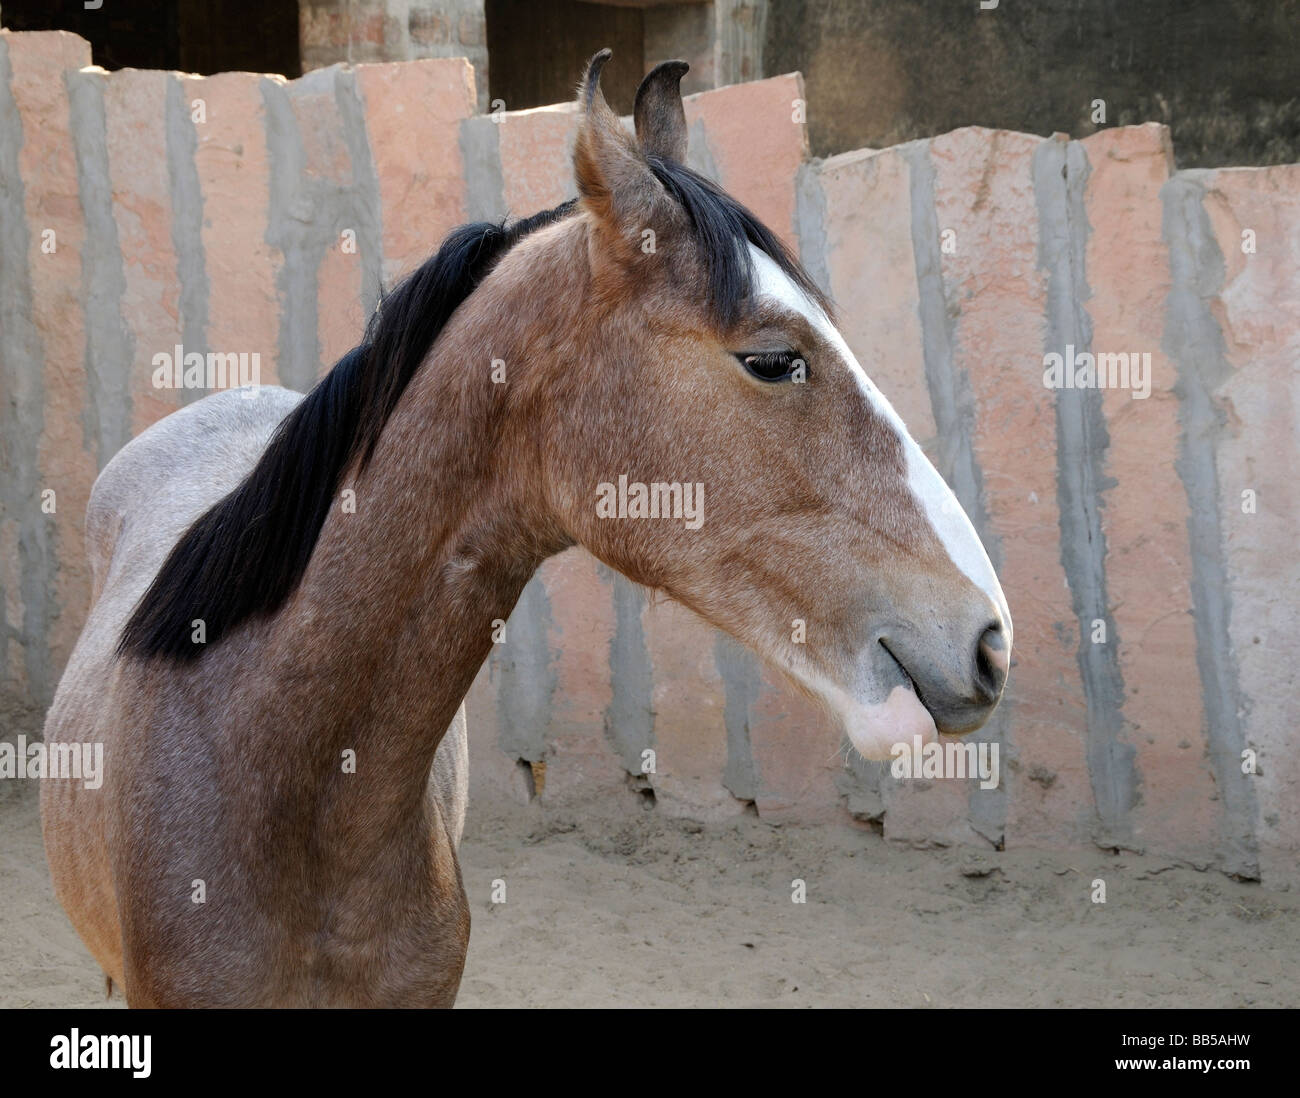 Marwari Pferde steht in einem Gehäuse aus Steinplatten hergestellt. Das Pferd hat die charakteristische nach innen weisenden Lyra geformt Ohren. Stockfoto